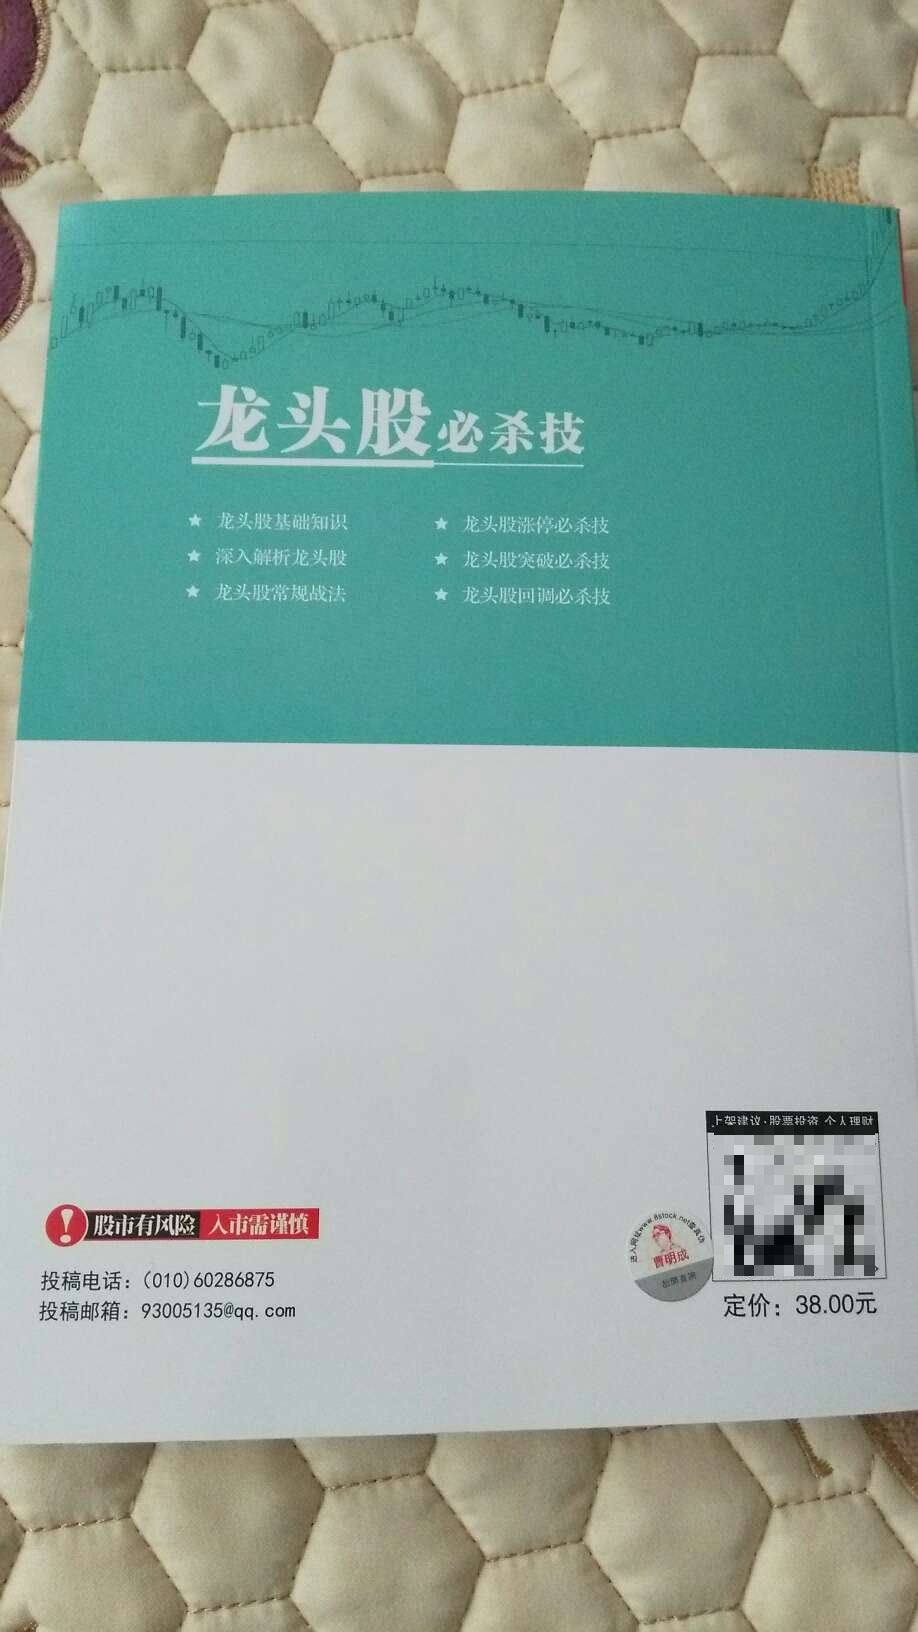 曹明成老师的新书，详细的讲解“龙头股”的全部知识，实战性很强，值得每一个股民好好学习！